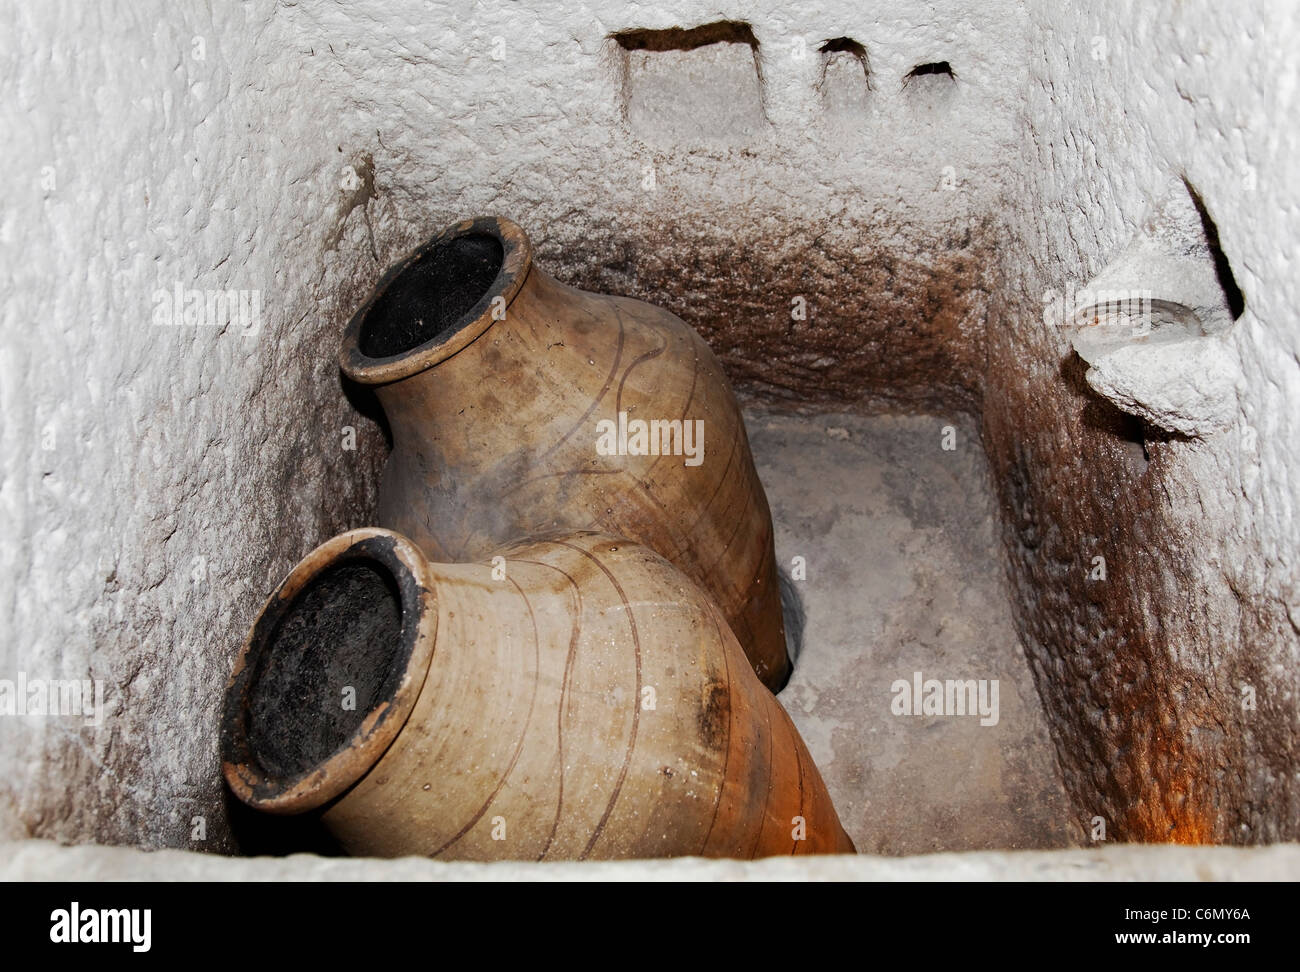 Antica reliquia di epoca romana, bagno interno scolpito in una grotta di pietra calcarea, acqua urne, portatori di acqua, battute per prodotti cosmetici Foto Stock